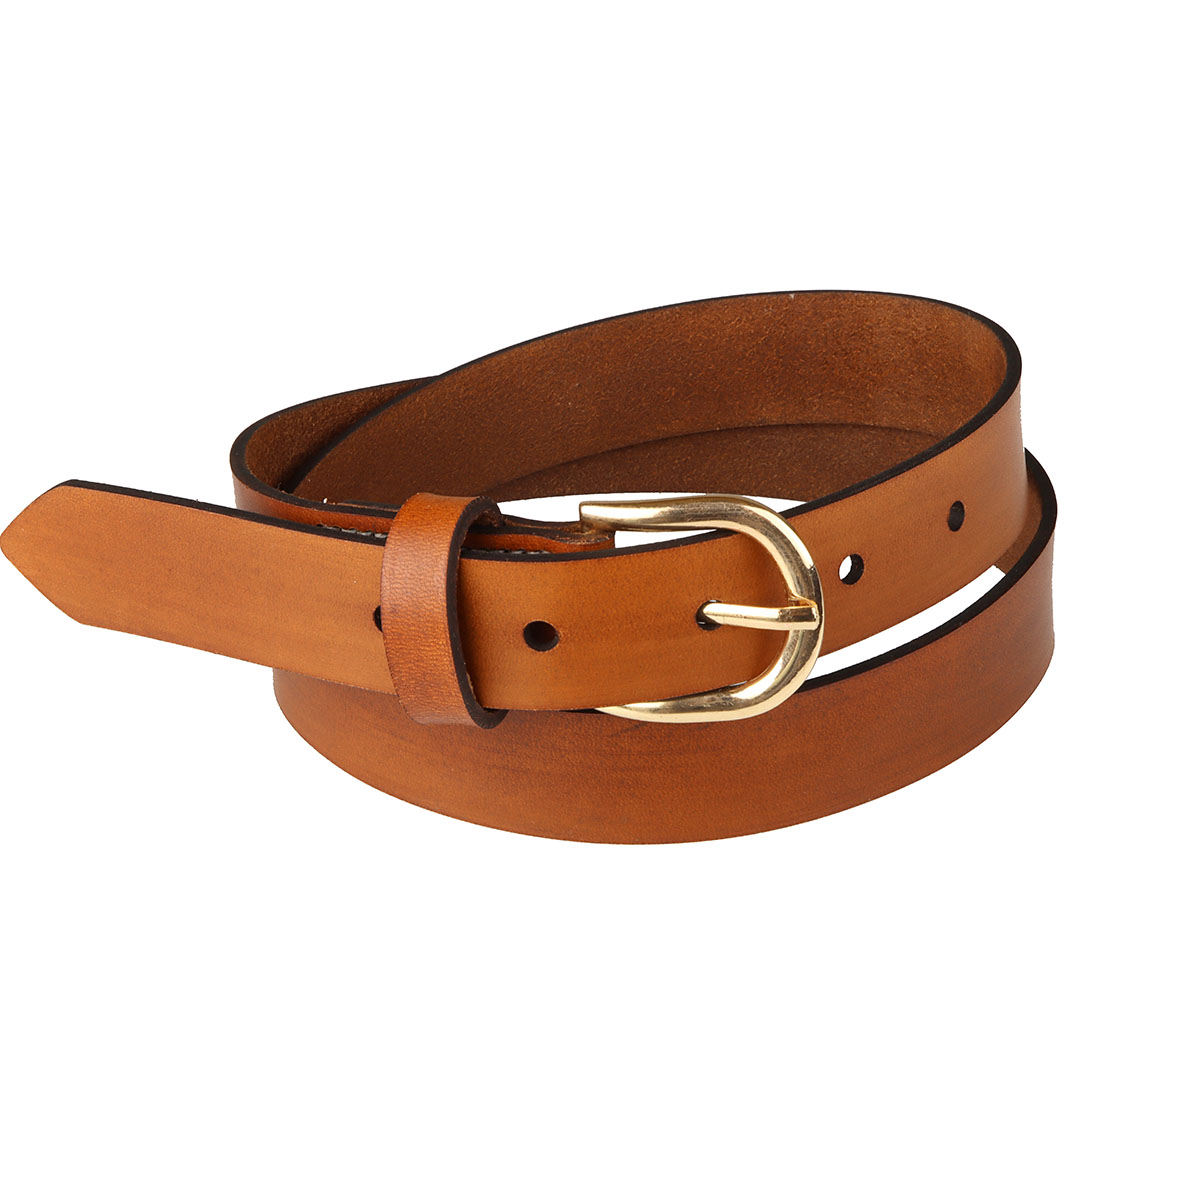 Deco Cuir - Apprenez à faire votre ceinture en cuir grâce à notre kit  complet 🧑‍🎄 🗸 Pour débutants 🗸 Sans couture 2 kits au choix ▪️ SIMPLE  (pour faire une ceinture